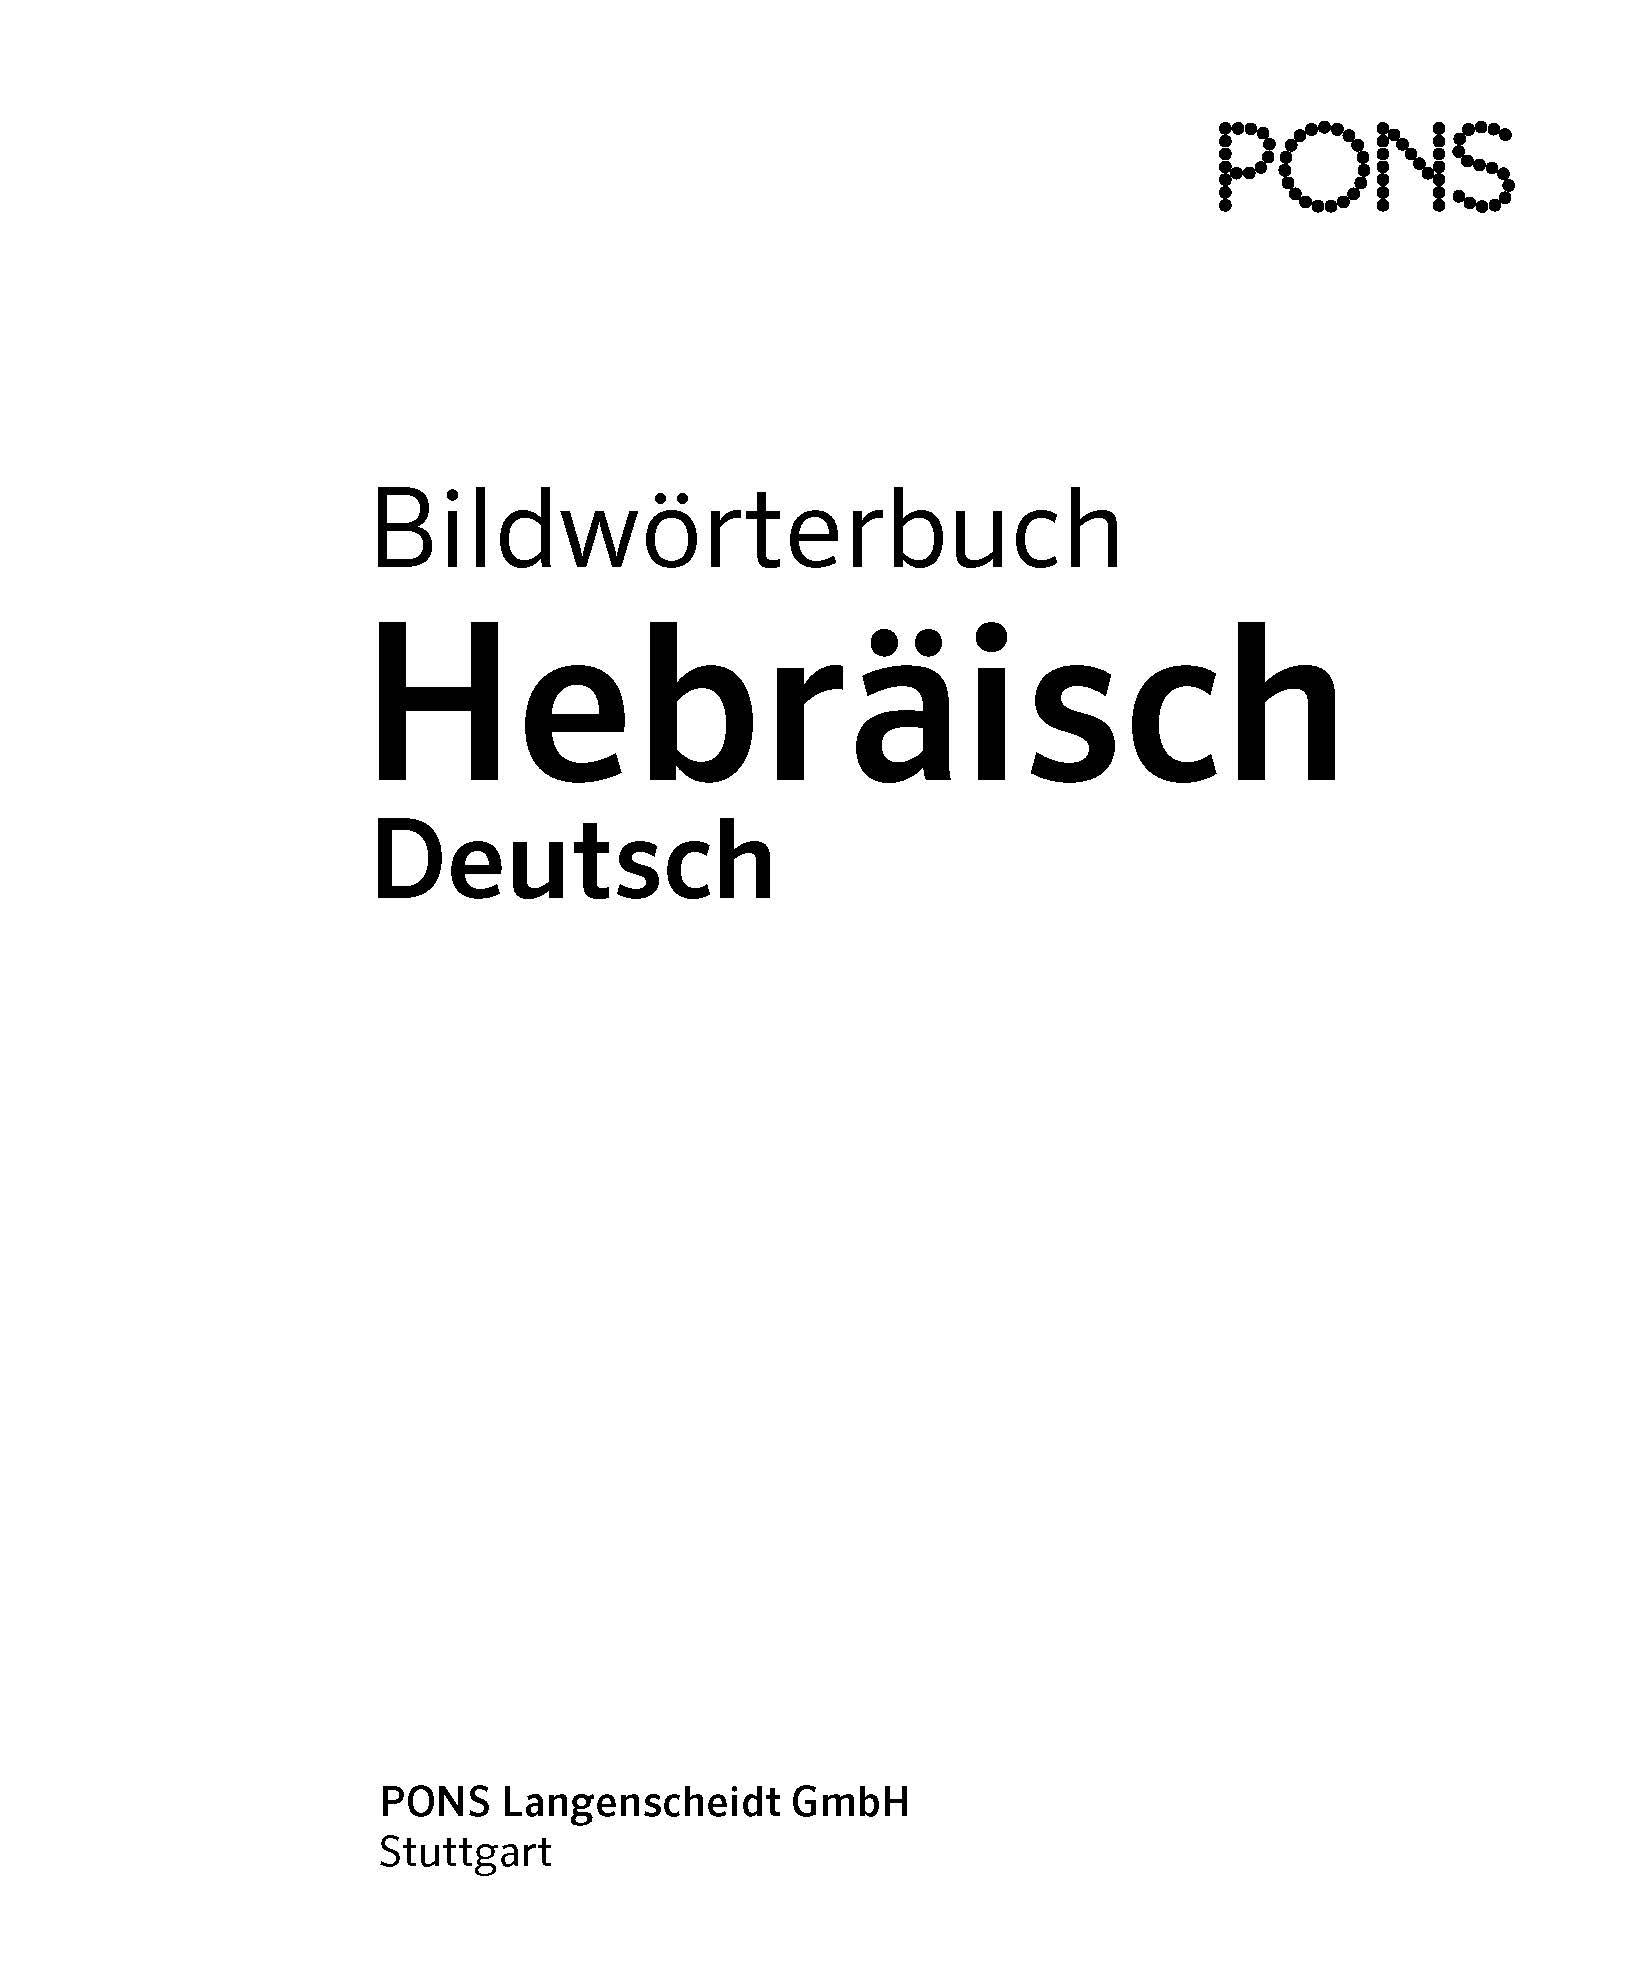 PONS Bildwörterbuch Hebräisch